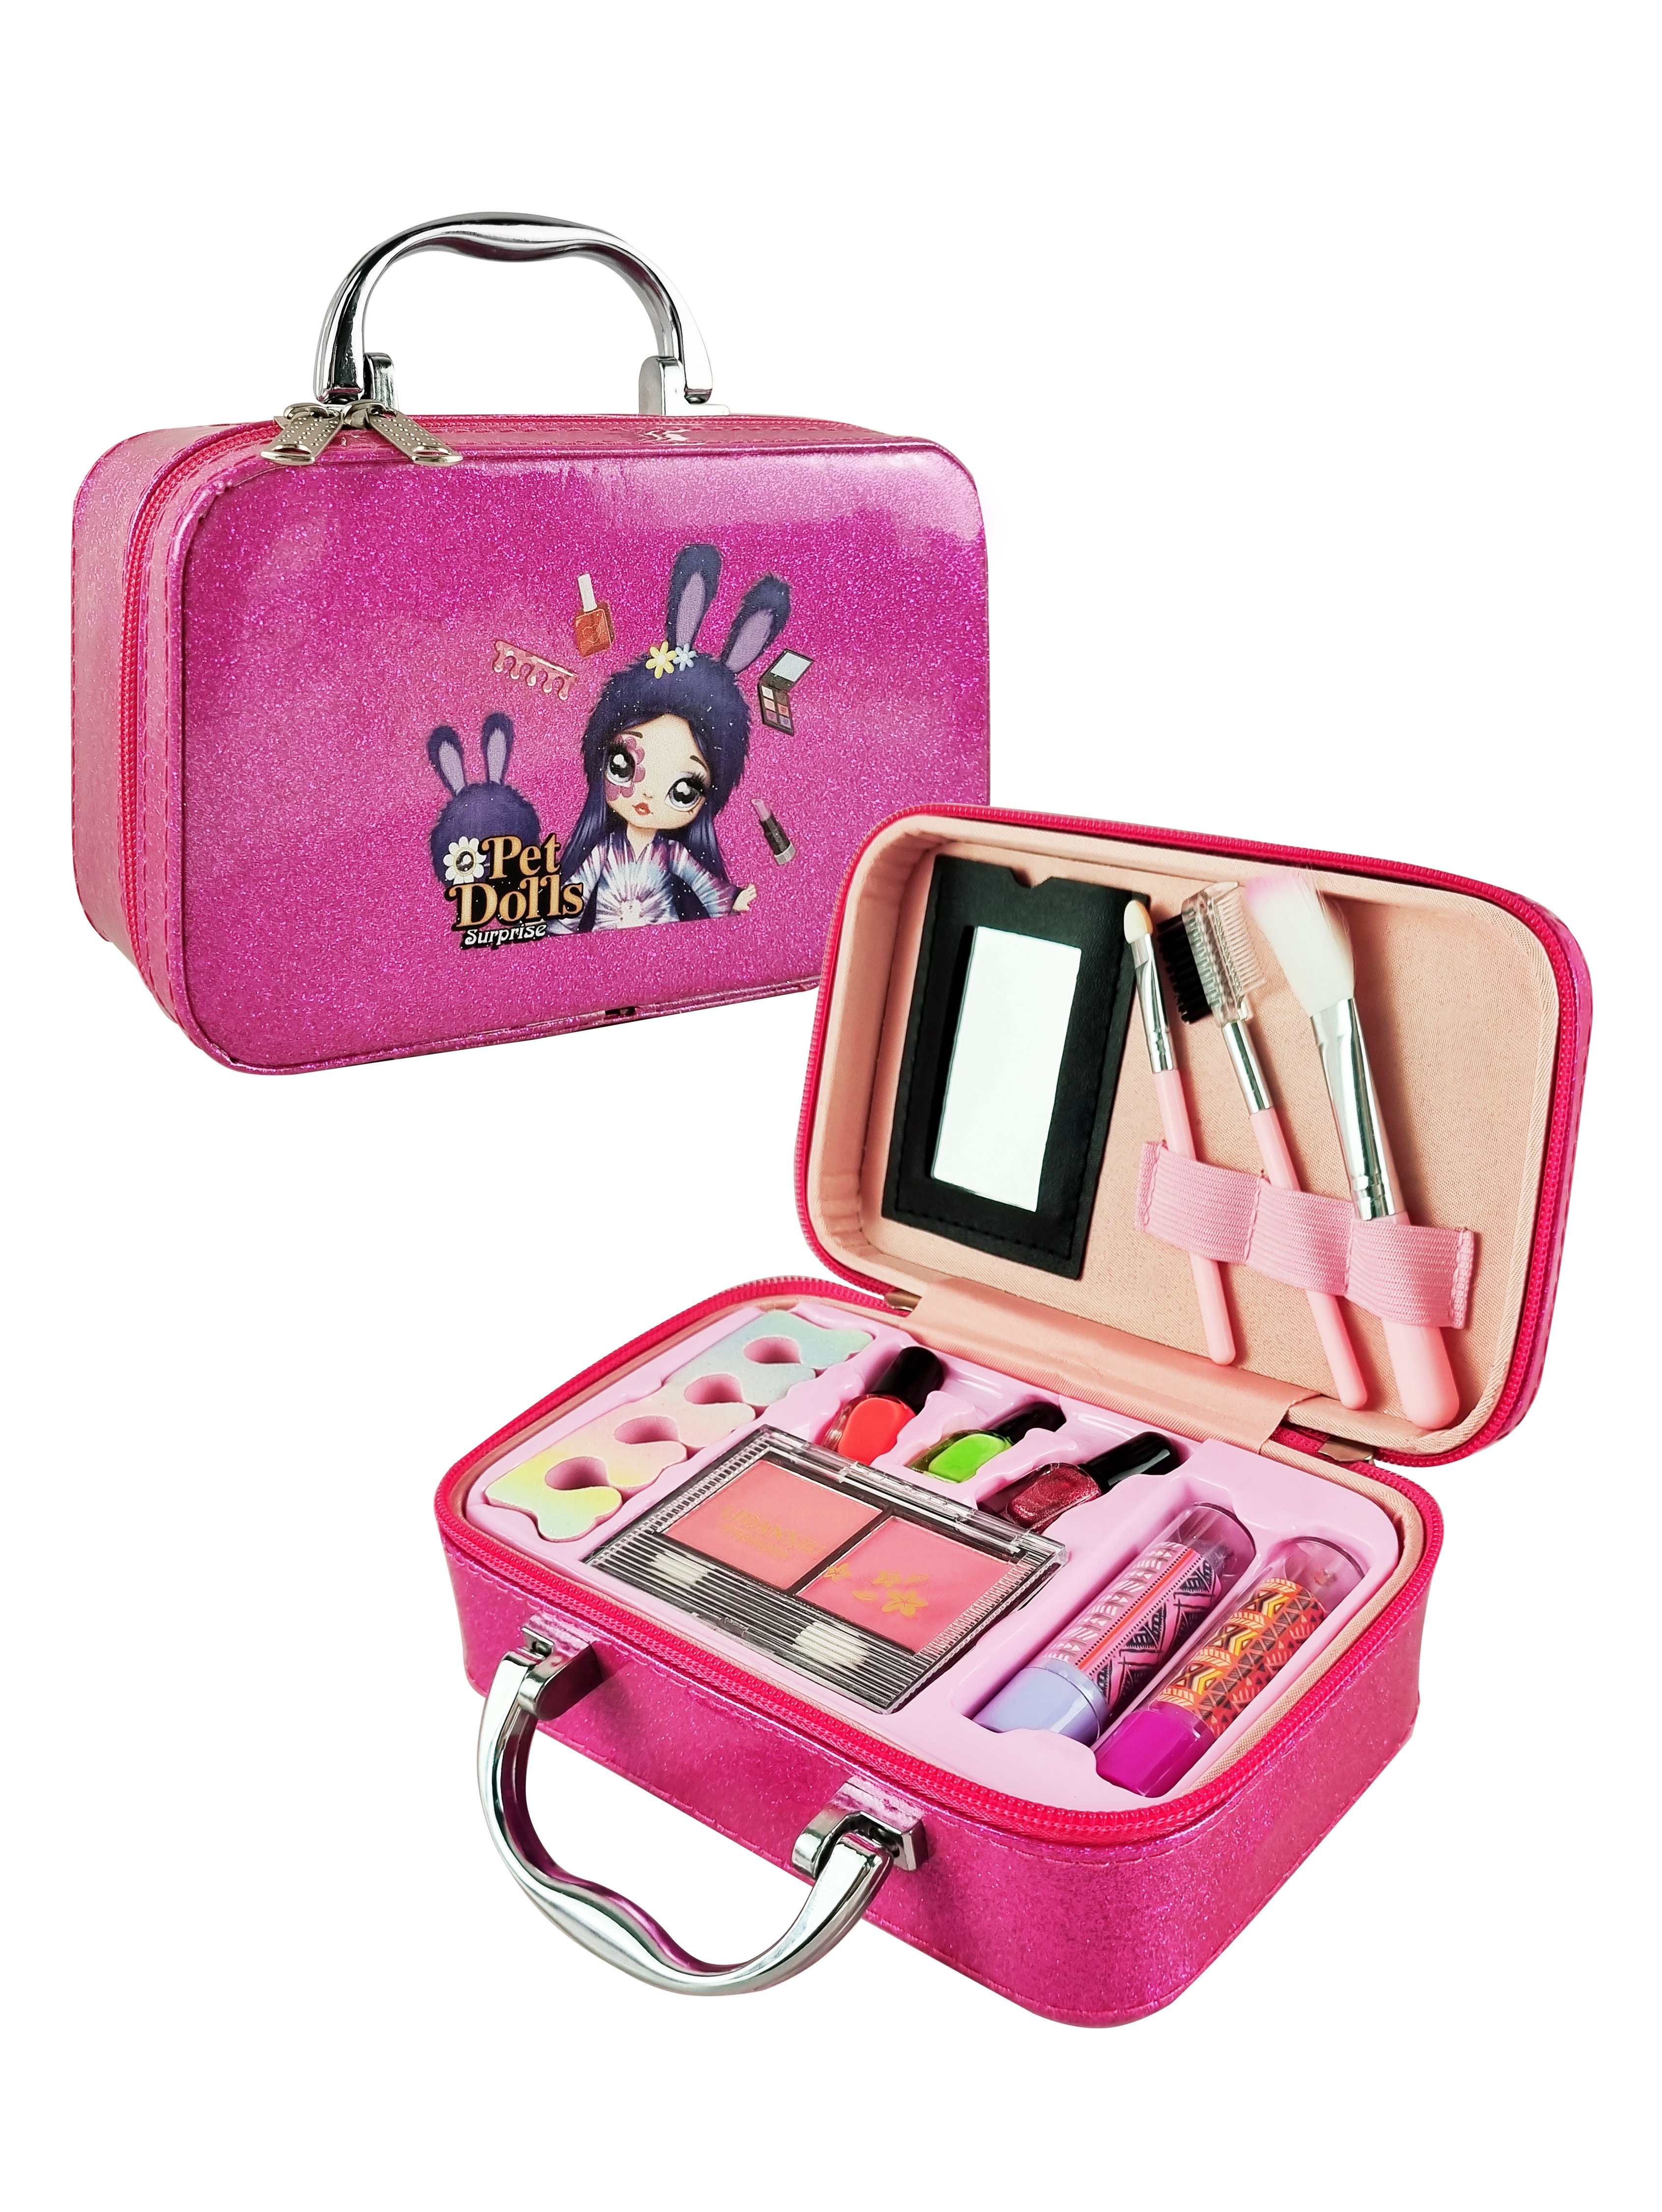 Детская декоративная косметика PetDolls, 12 предметов, пурпурный чемоданчик 5-905-1 косметика